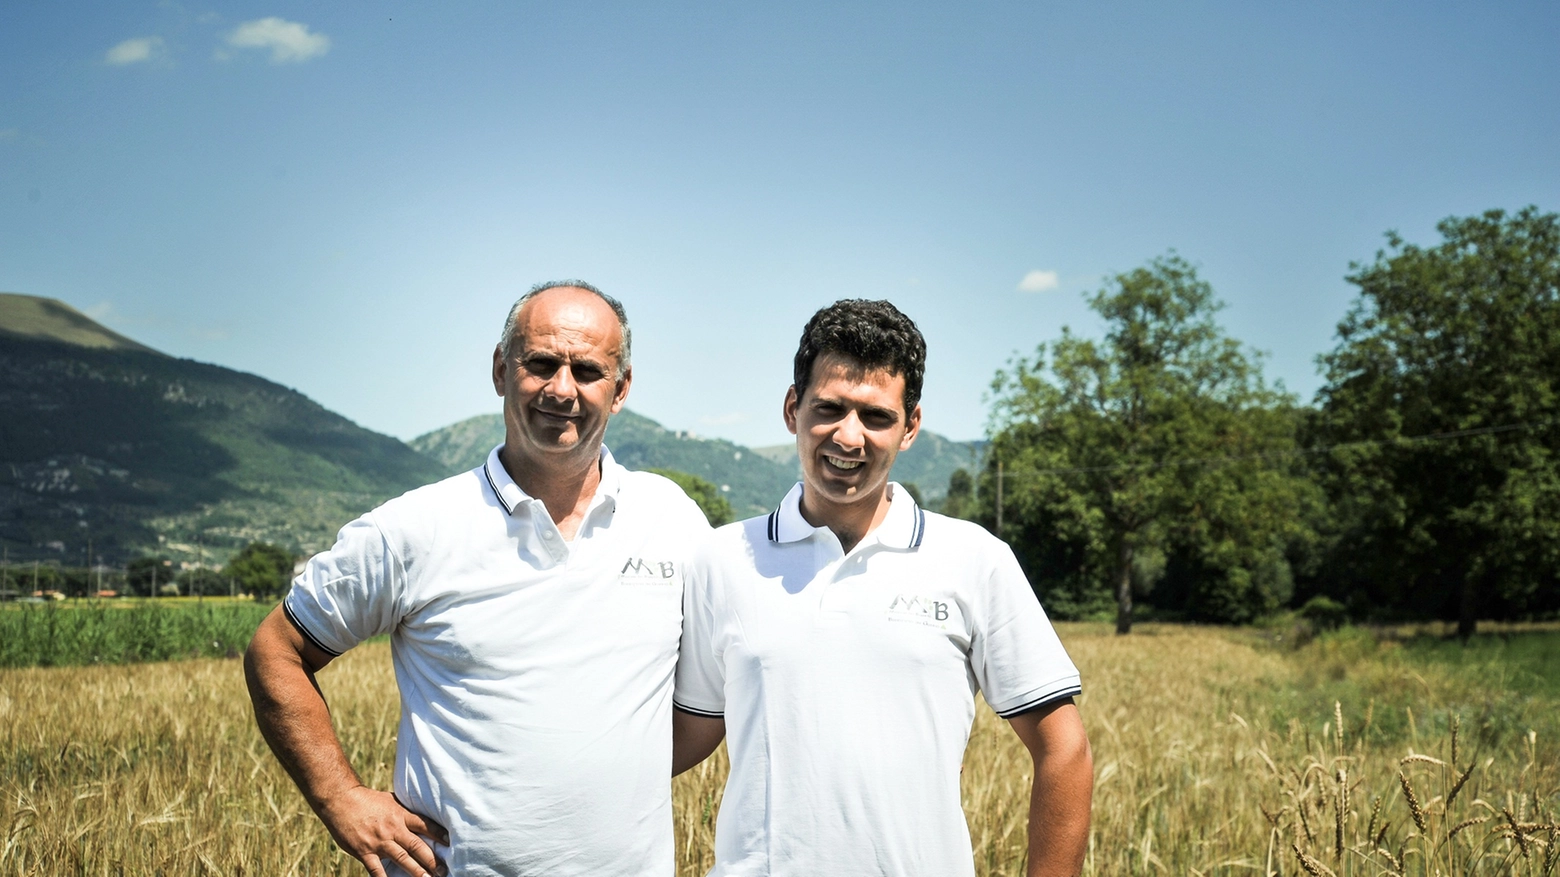 A capo dell'azienda c'è un giovane studente di Agraria: Marco Silvioli